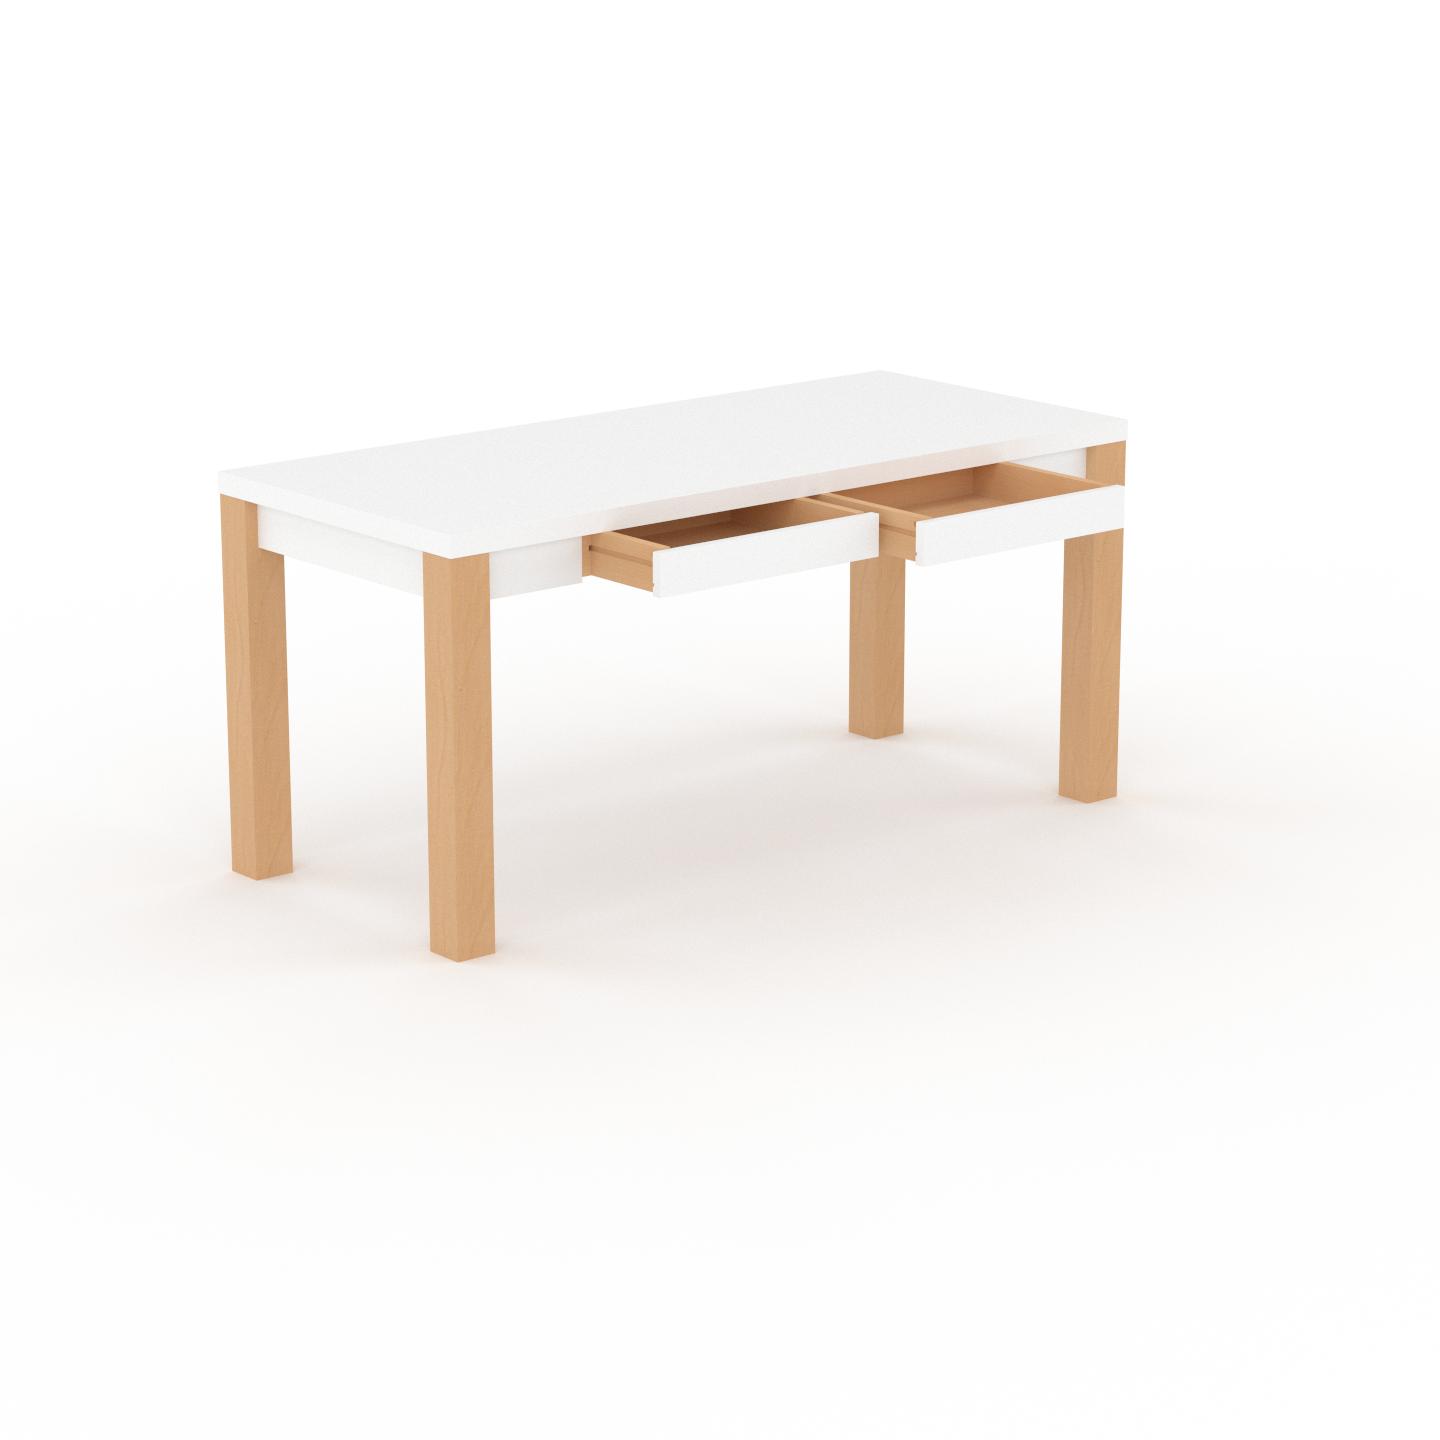 MYCS Schreibtisch Massivholz Weiß - Massivholz-Schreibtisch: mit 2 Schublade/n & Tischrahmen - Hochwertige Materialien - 160 x 76 x 70 cm, konfigurierbar